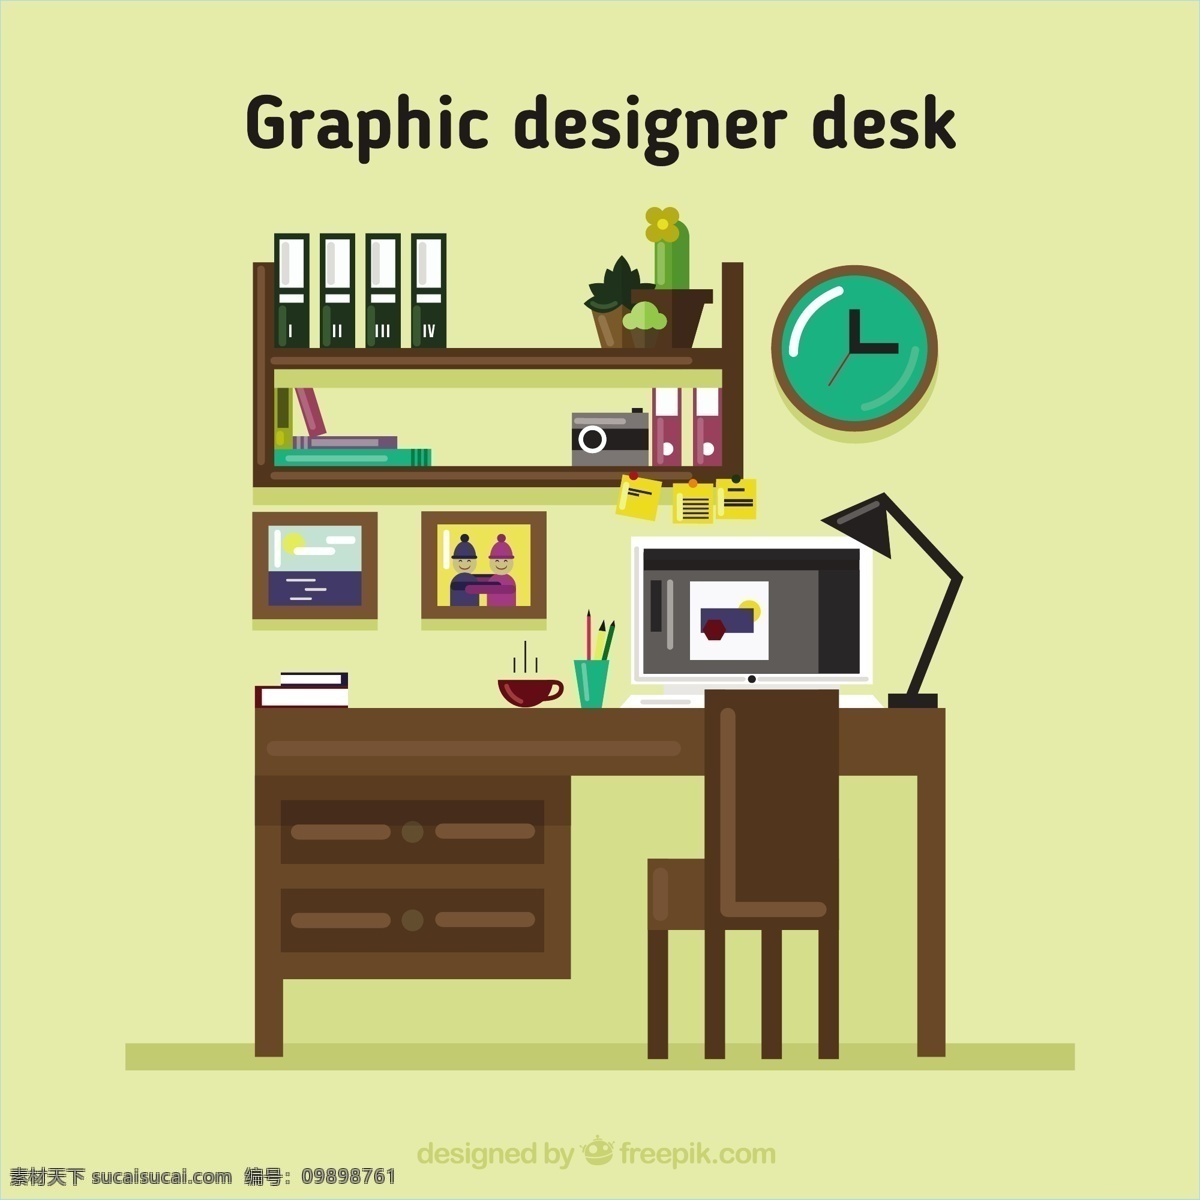 木制 图形 desigher 桌 木 平面 书桌 平面设计 设计师 桌面 平面设计师 工作空间 工作场所 黄色